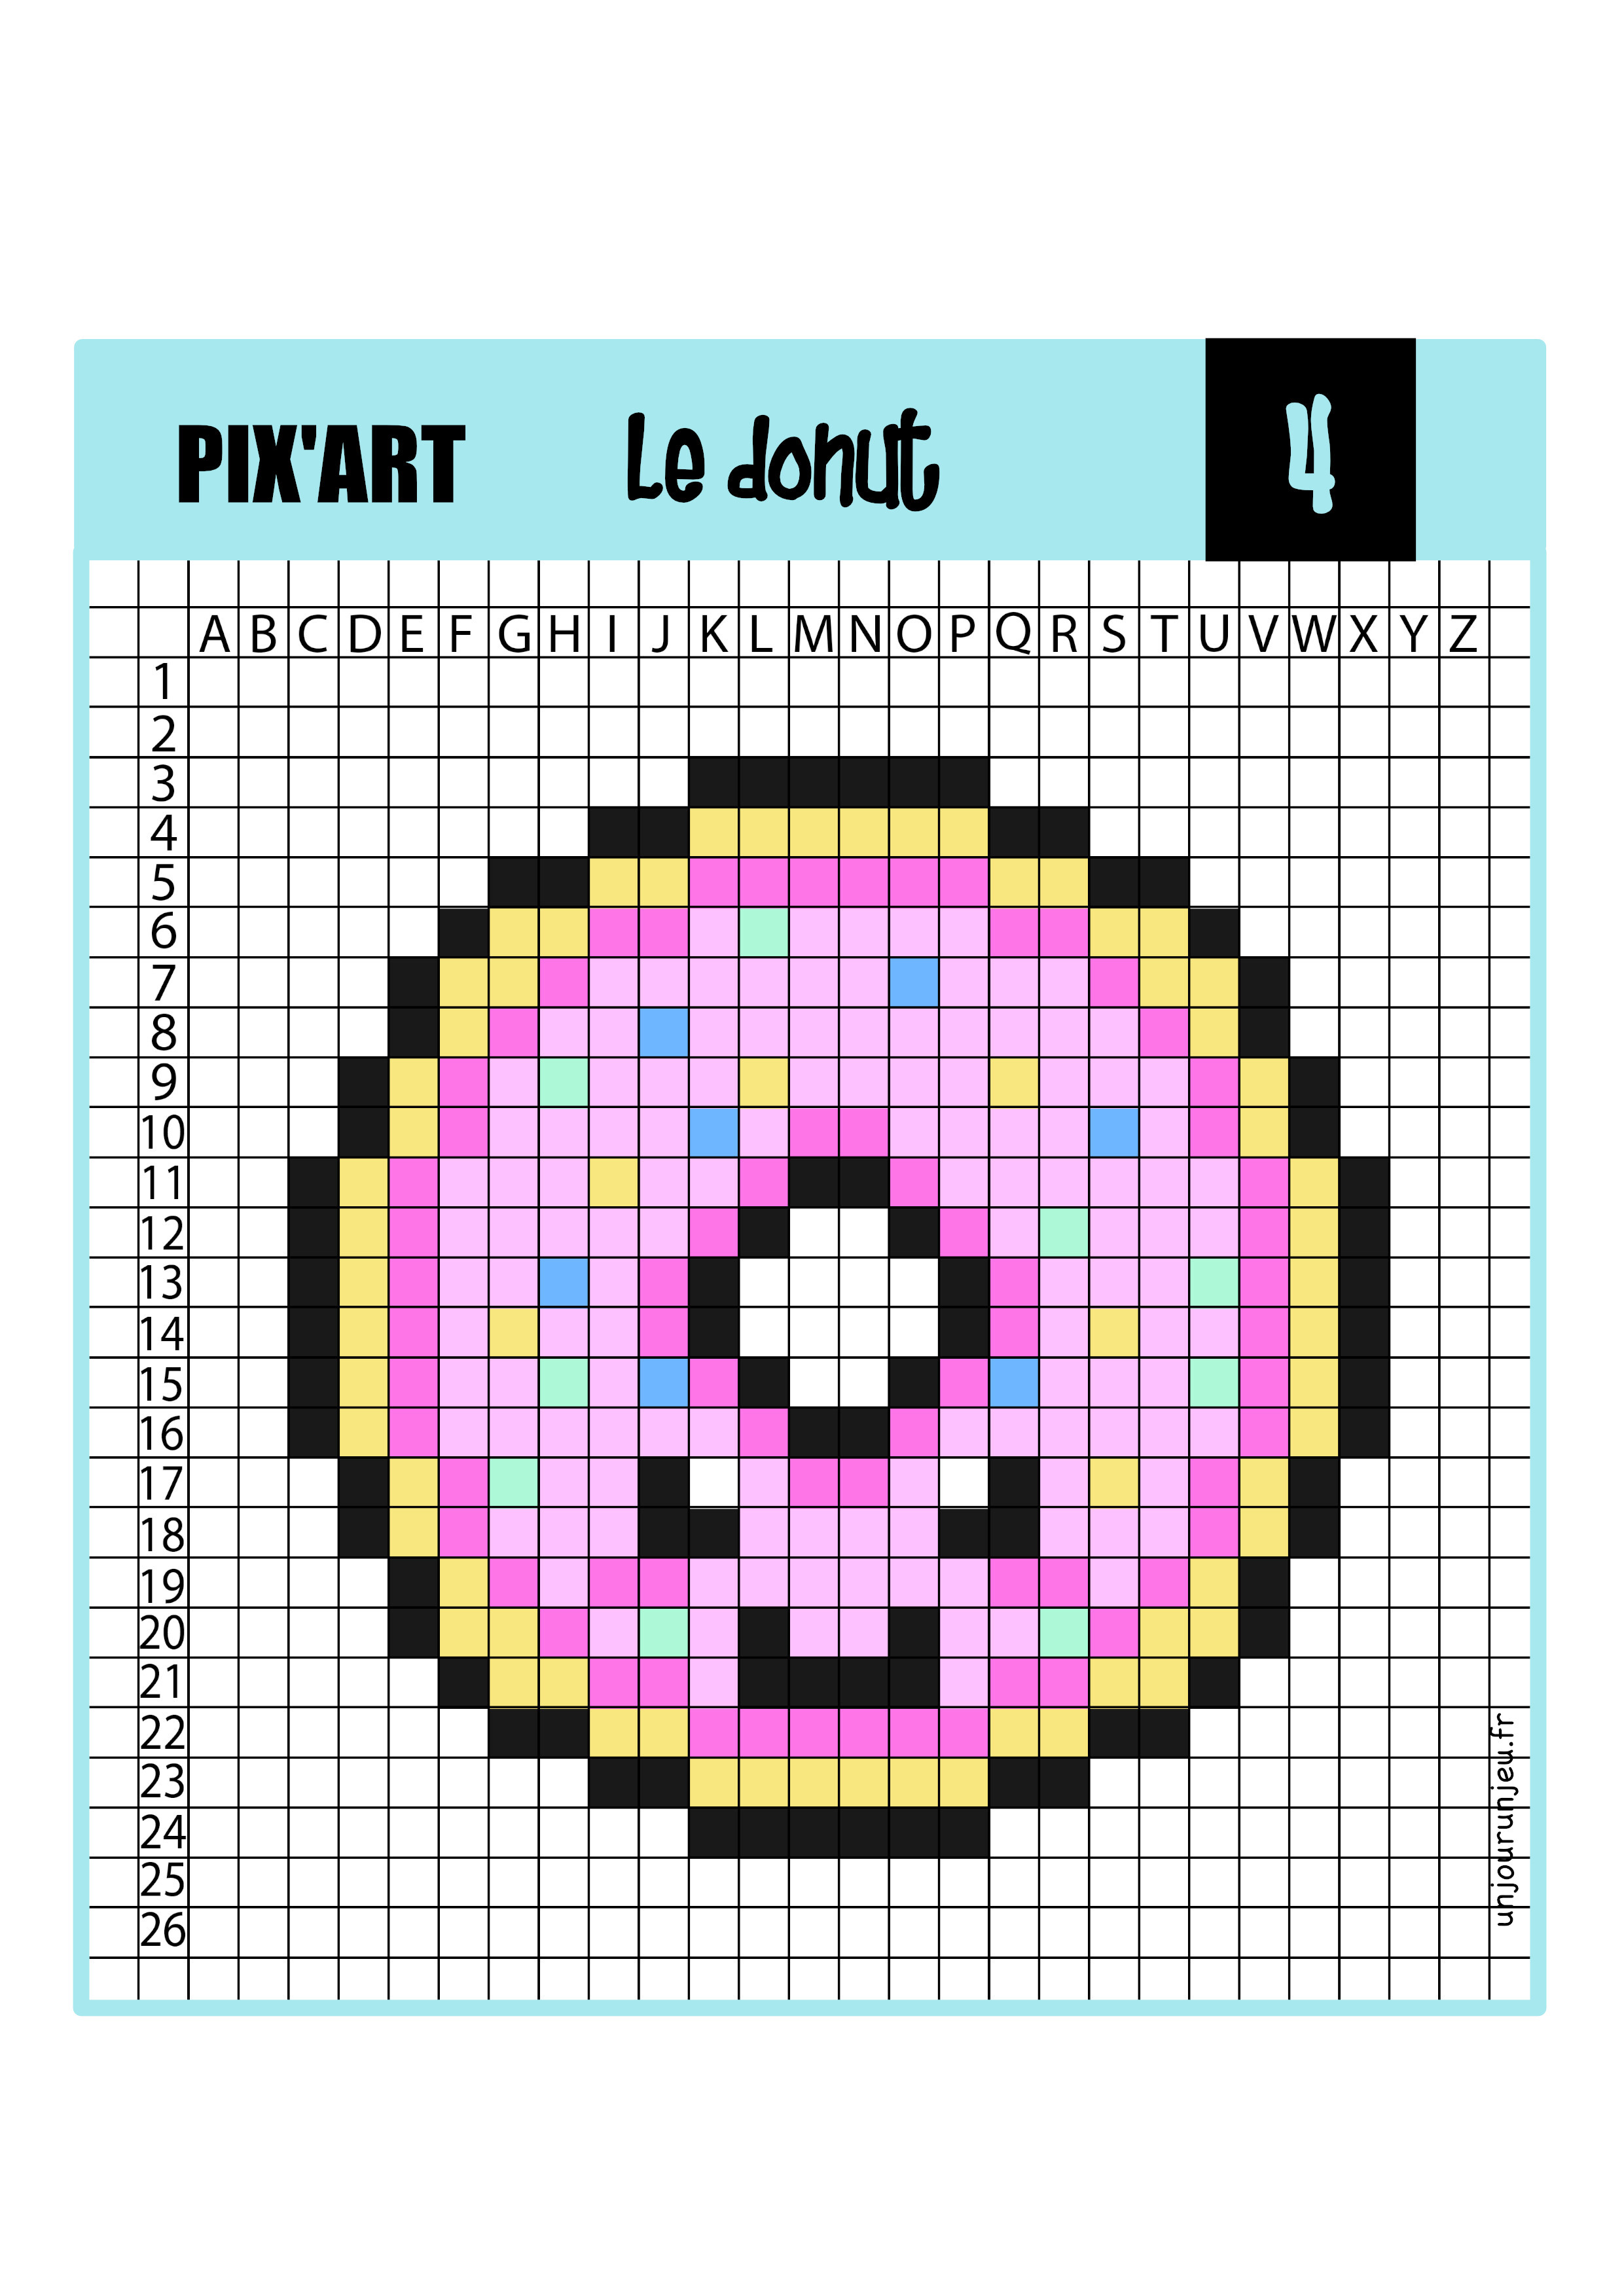 Pixel Art Kawaii 12 Modèles Trop Mignons à Télécharger